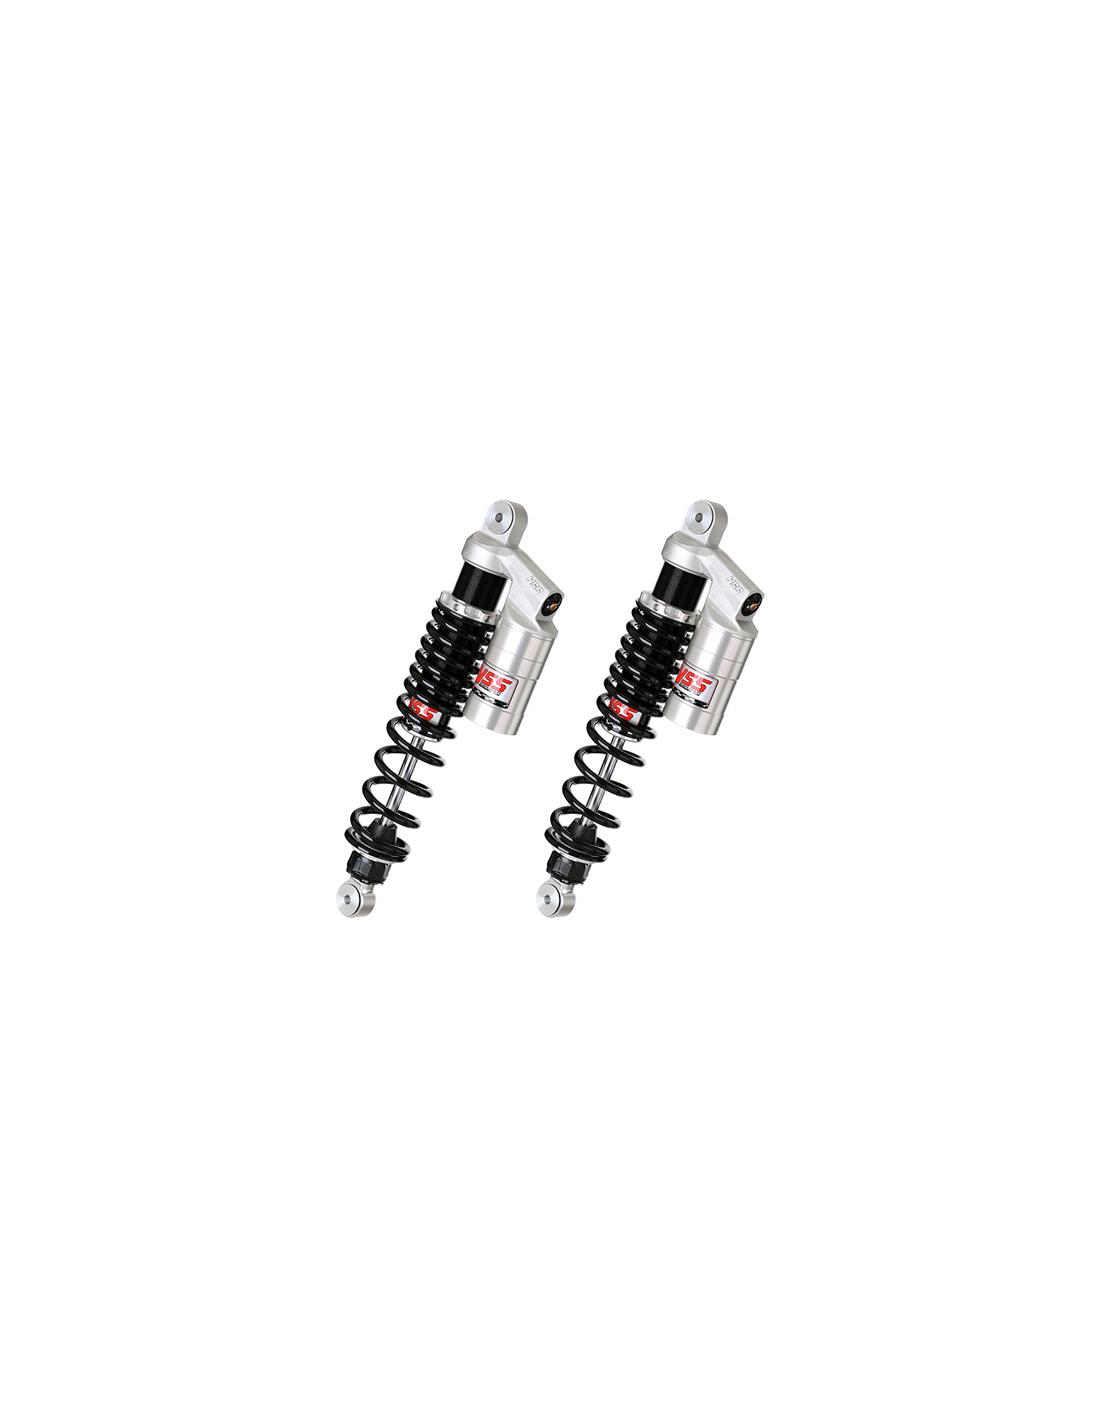 Amortiguadores traseros YSS RG362-390TRC-05 gas con botella Maico MC 490